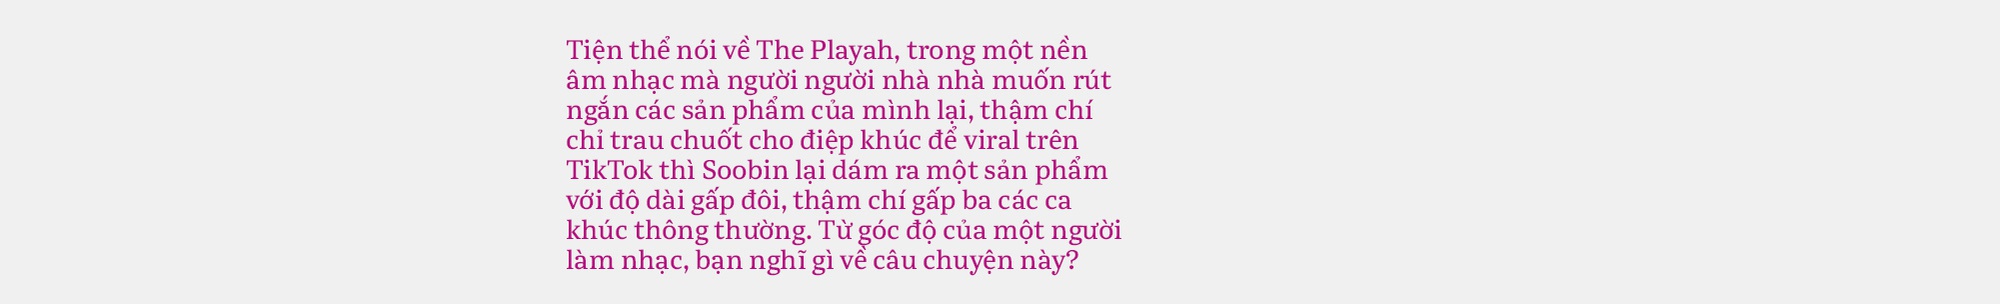 SOOBIN: “Ra nhạc mà chỉ mong viral vài câu trong điệp khúc là tình trạng rất đáng buồn của Vpop! - Ảnh 12.